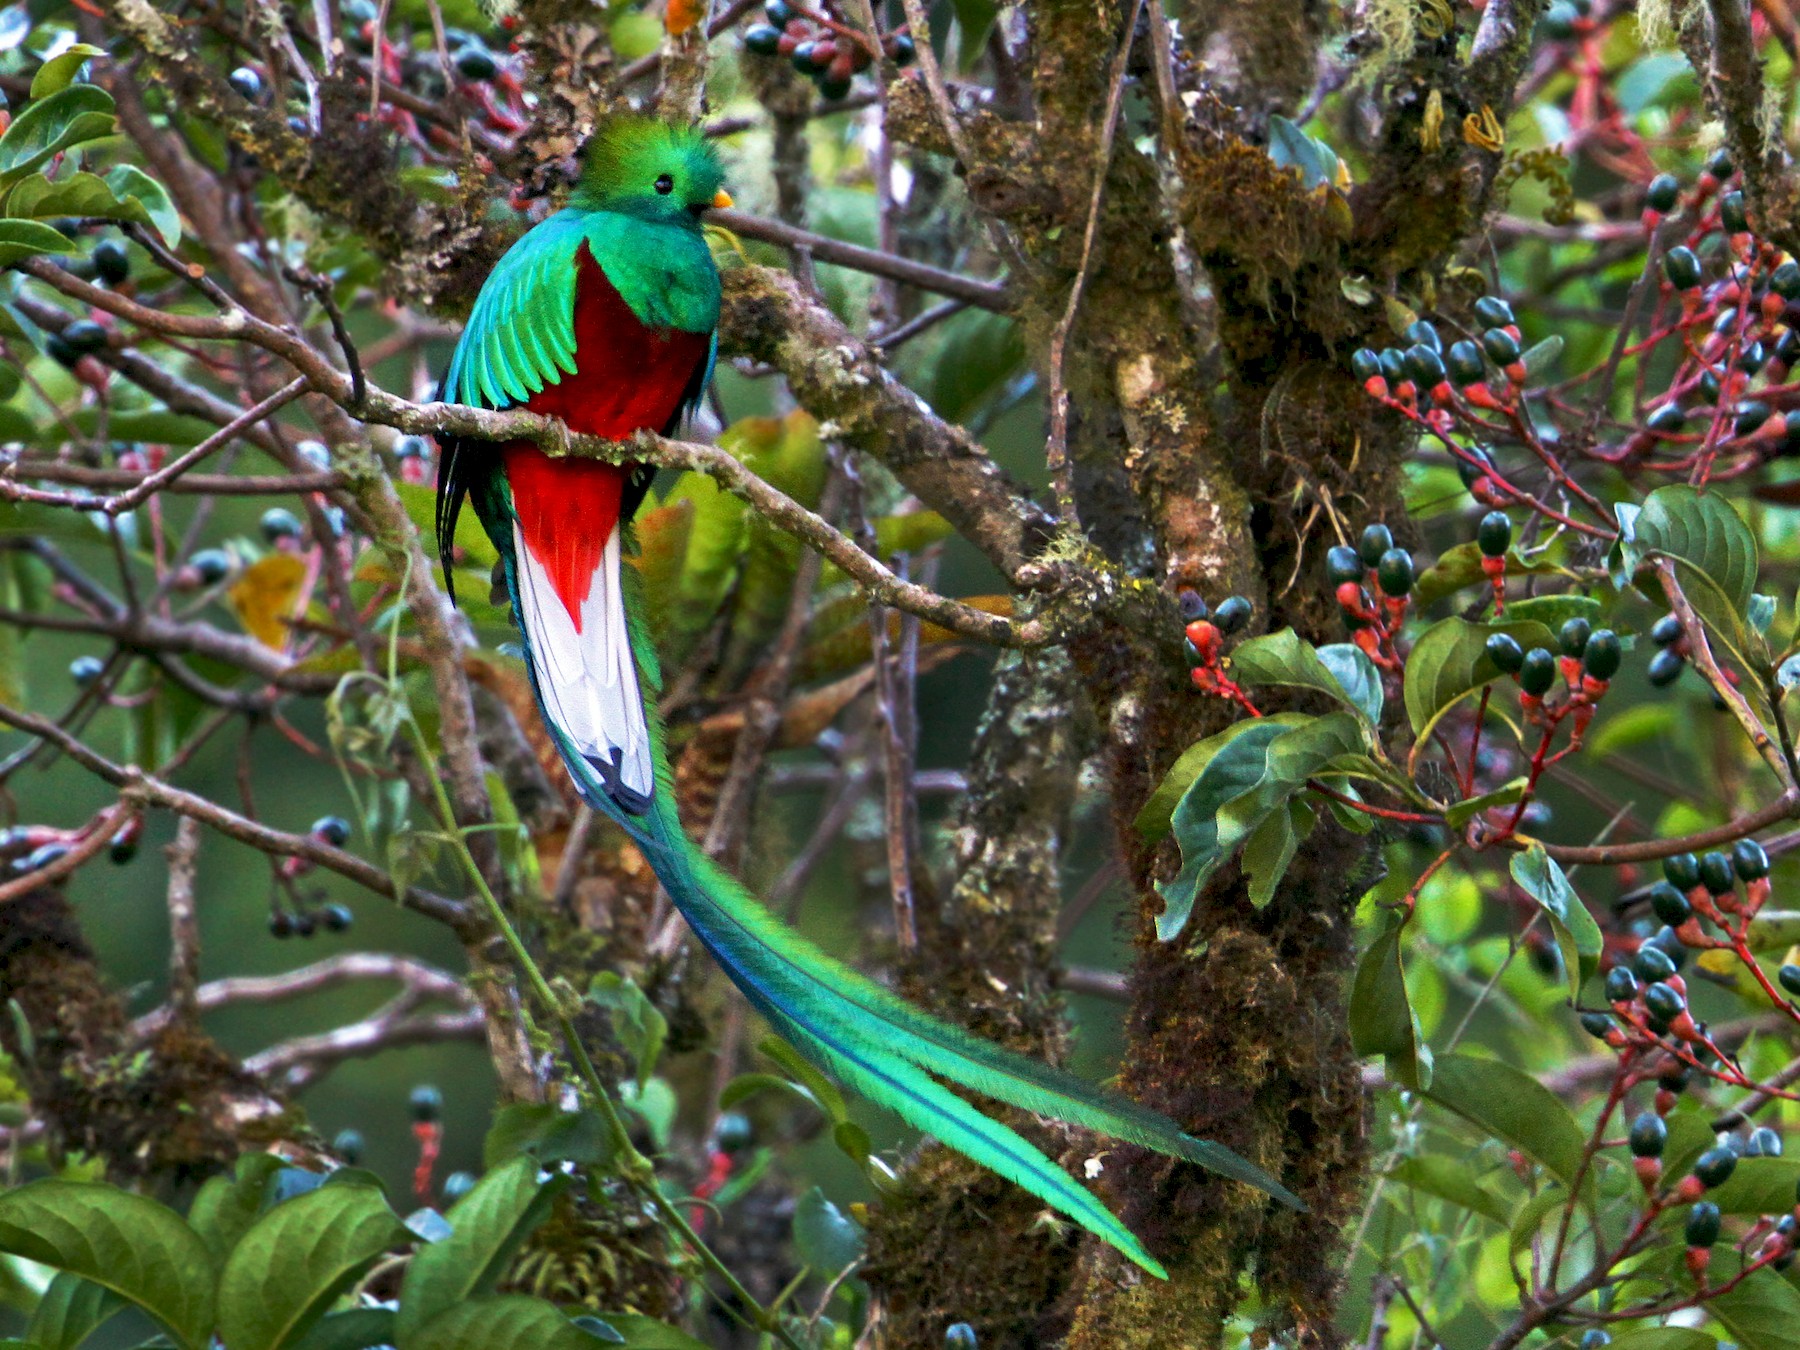 Quetzal. pássaro considerado sagrado pelos astecas, em parque natura na Costa Rica: espécies raras são atração turística (Foto: Turismo da Costa Rica / Divulgação)